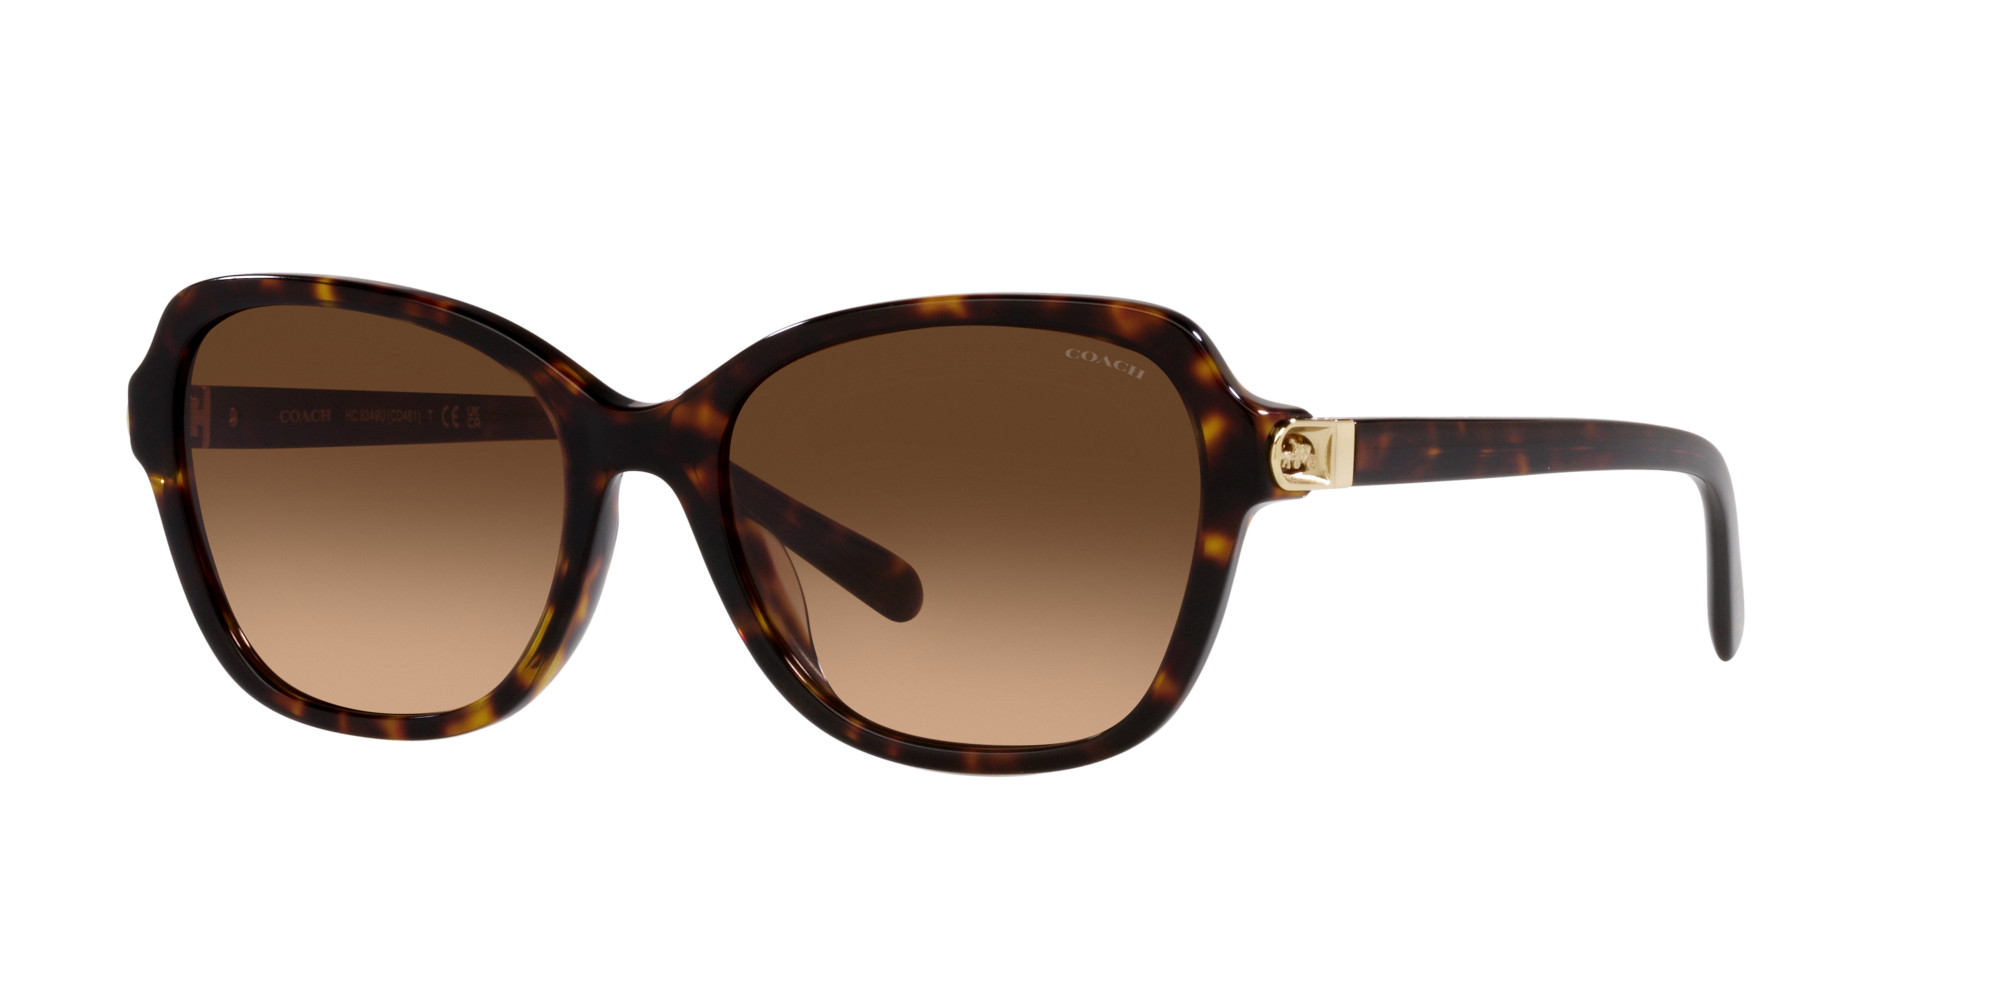 返品保証COACH S2049 レディース サングラス Sunglasses サングラス/メガネ